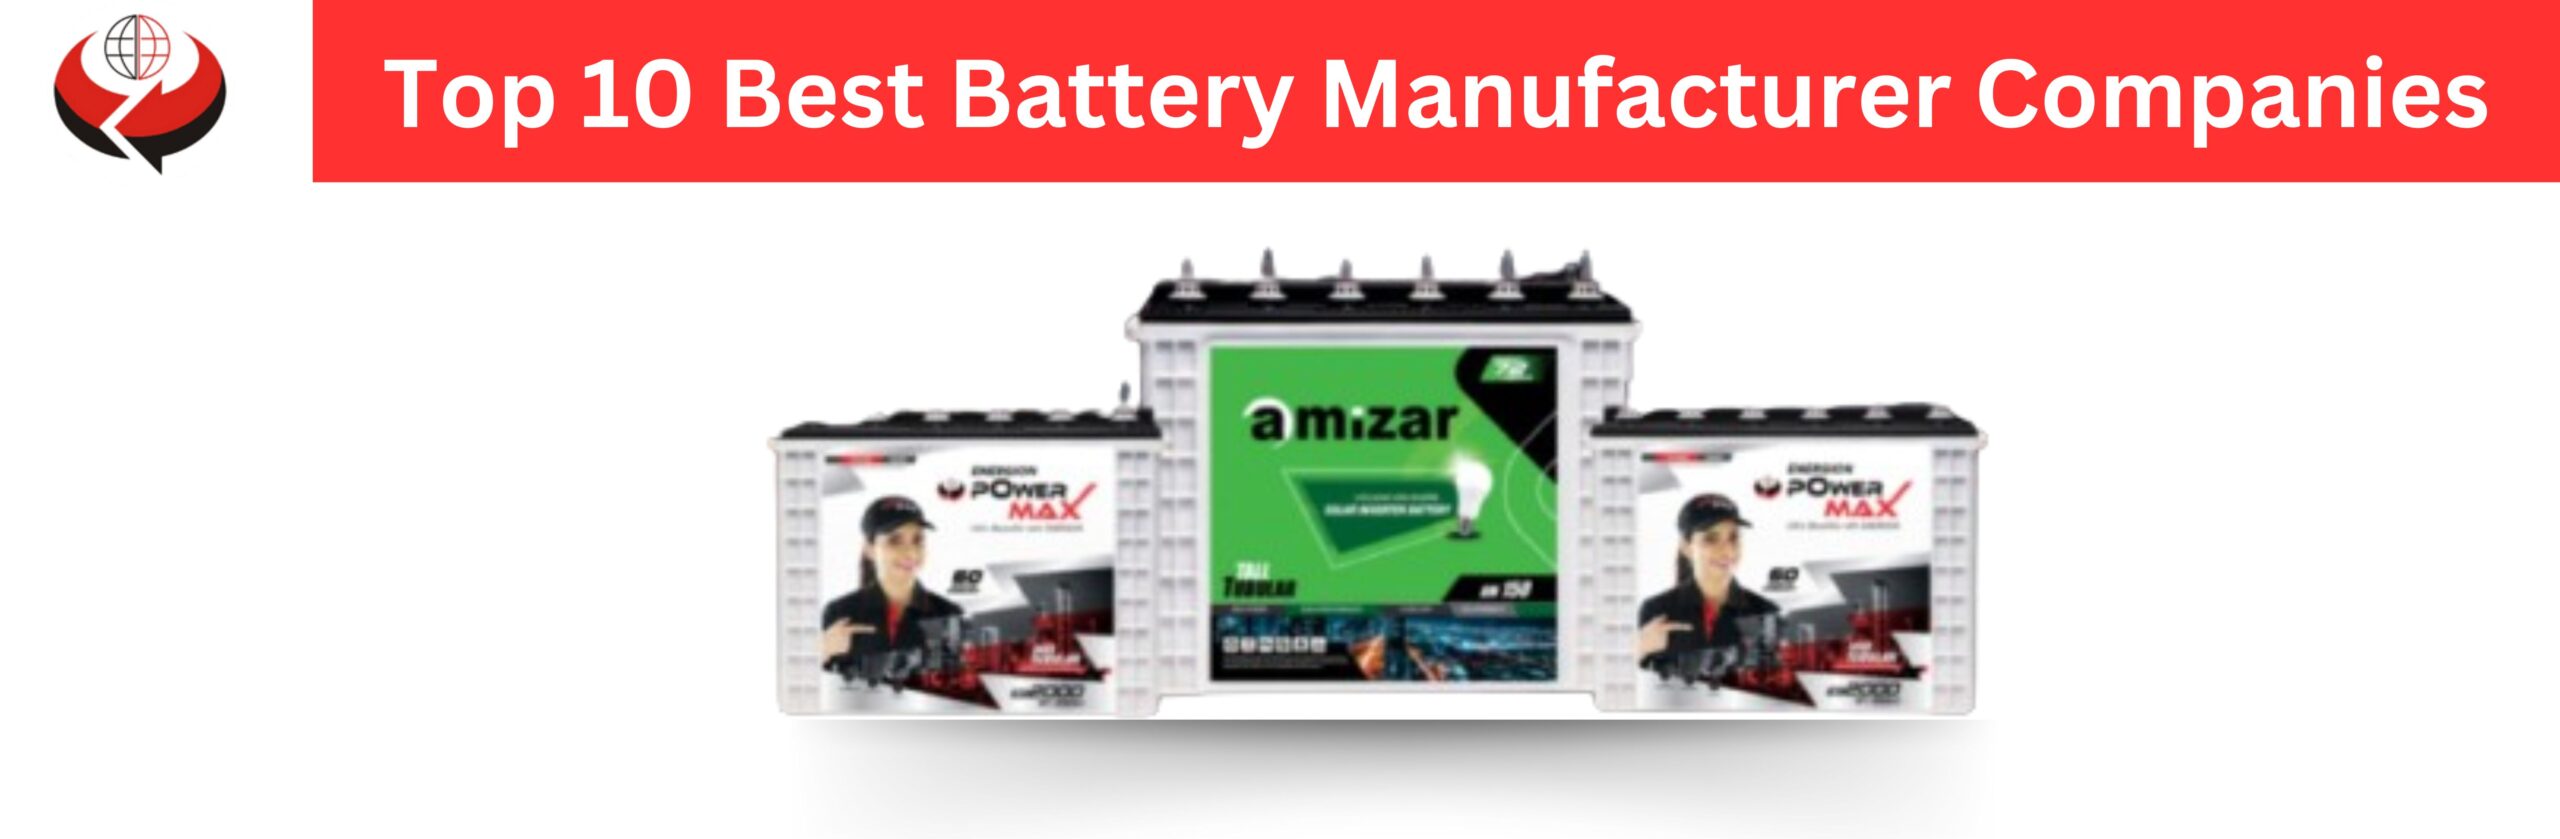 Top 10 Best Battery Manufacturer Companies